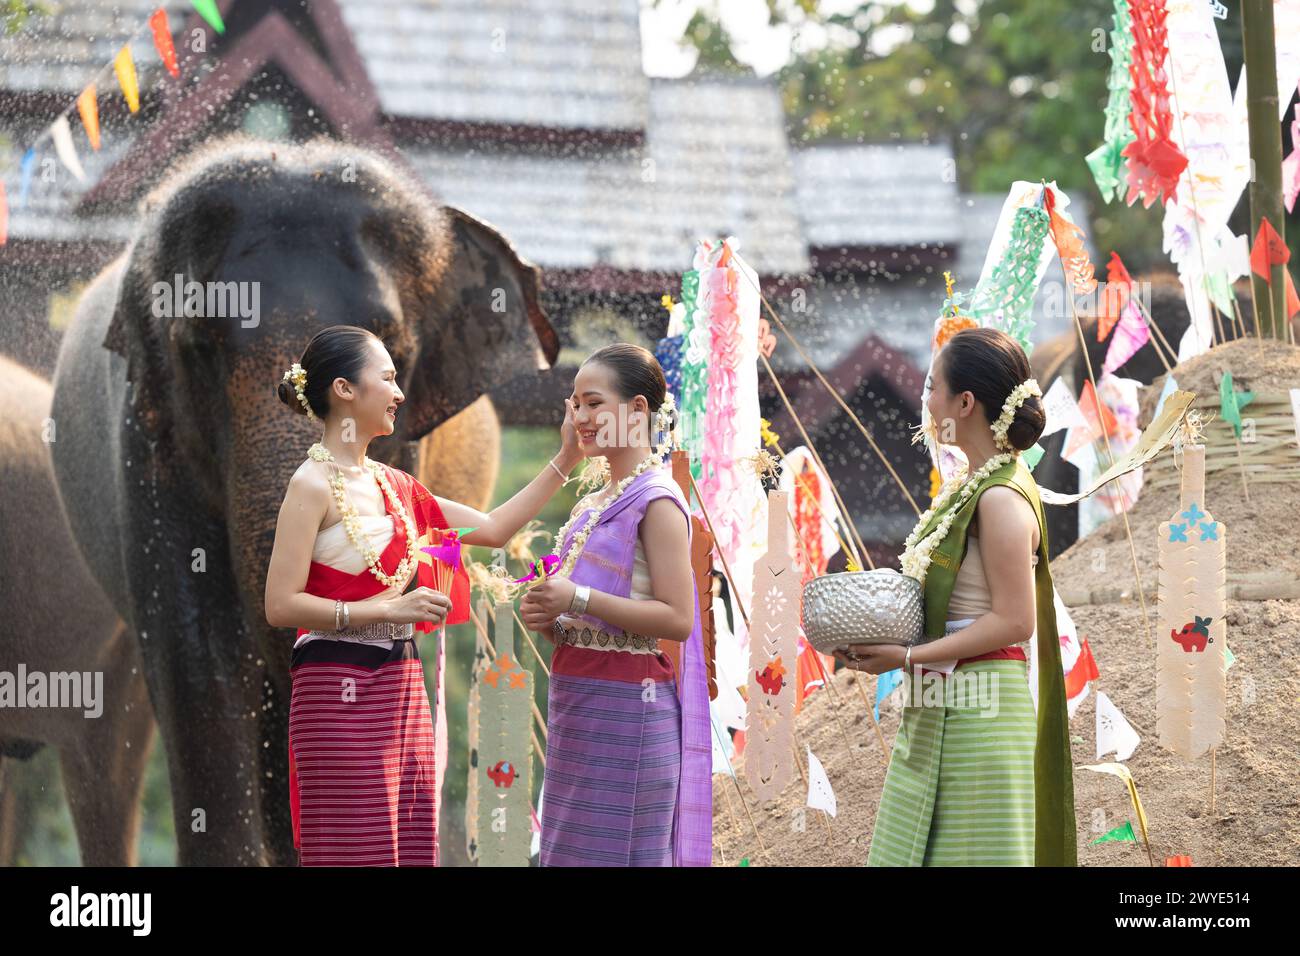 Festival Songkran. Les gens du nord de la Thaïlande en vêtements traditionnels s'habillant éclaboussant de l'eau ensemble dans le festival culturel de jour de Songkran avec dos d'éléphant Banque D'Images